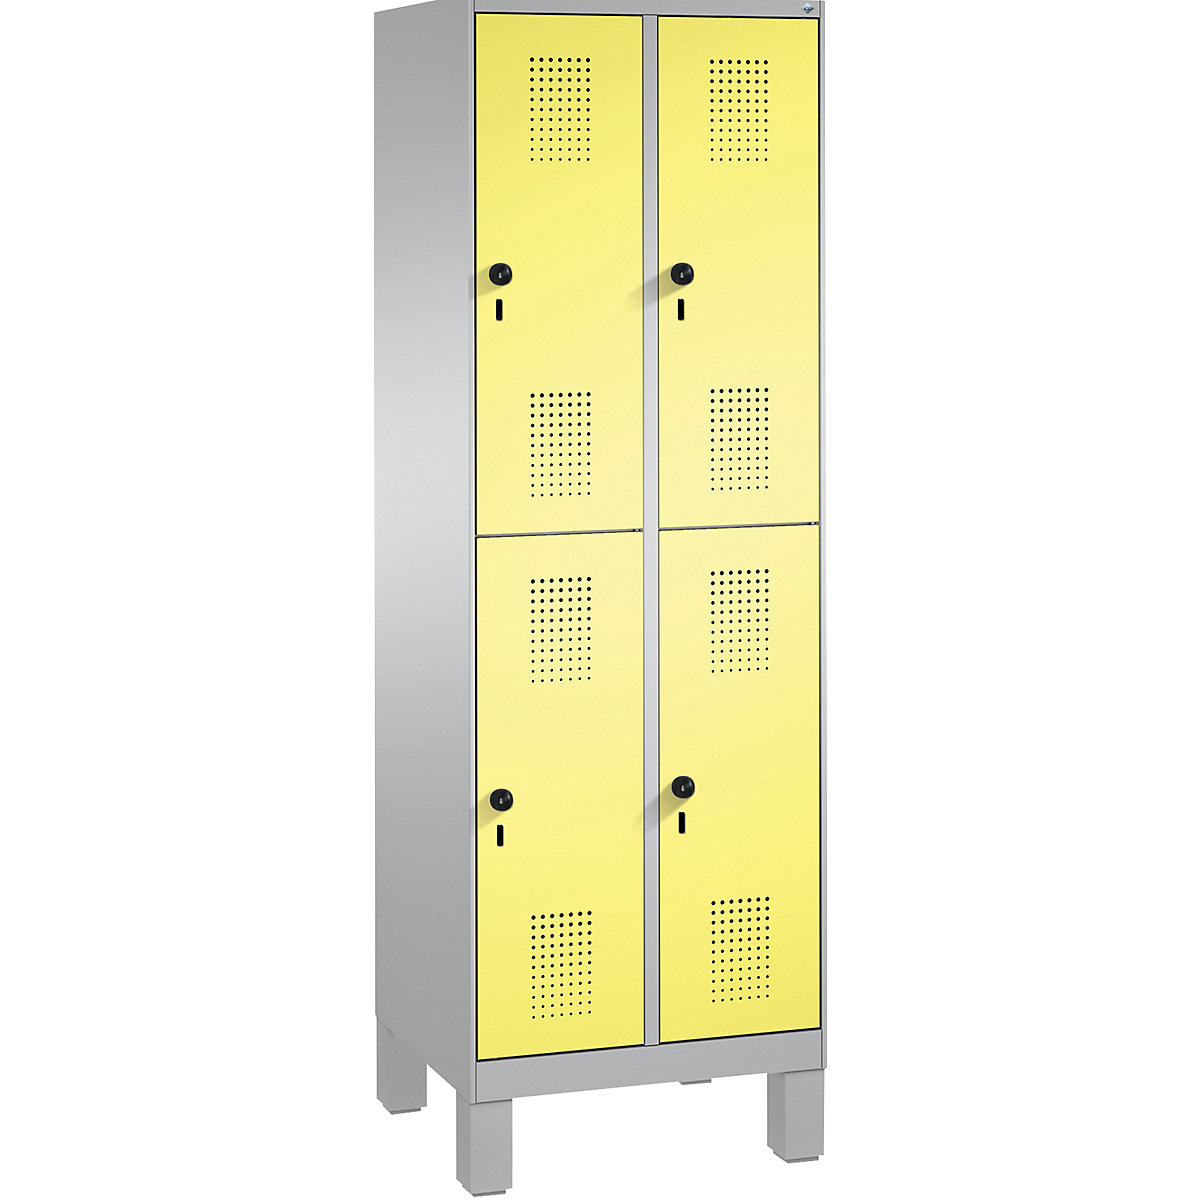 Penderie sur pieds EVOLO à deux étages – C+P, 2 compartiments, 2 casiers chacun, largeur compartiments 300 mm, aluminium / jaune soufre-2